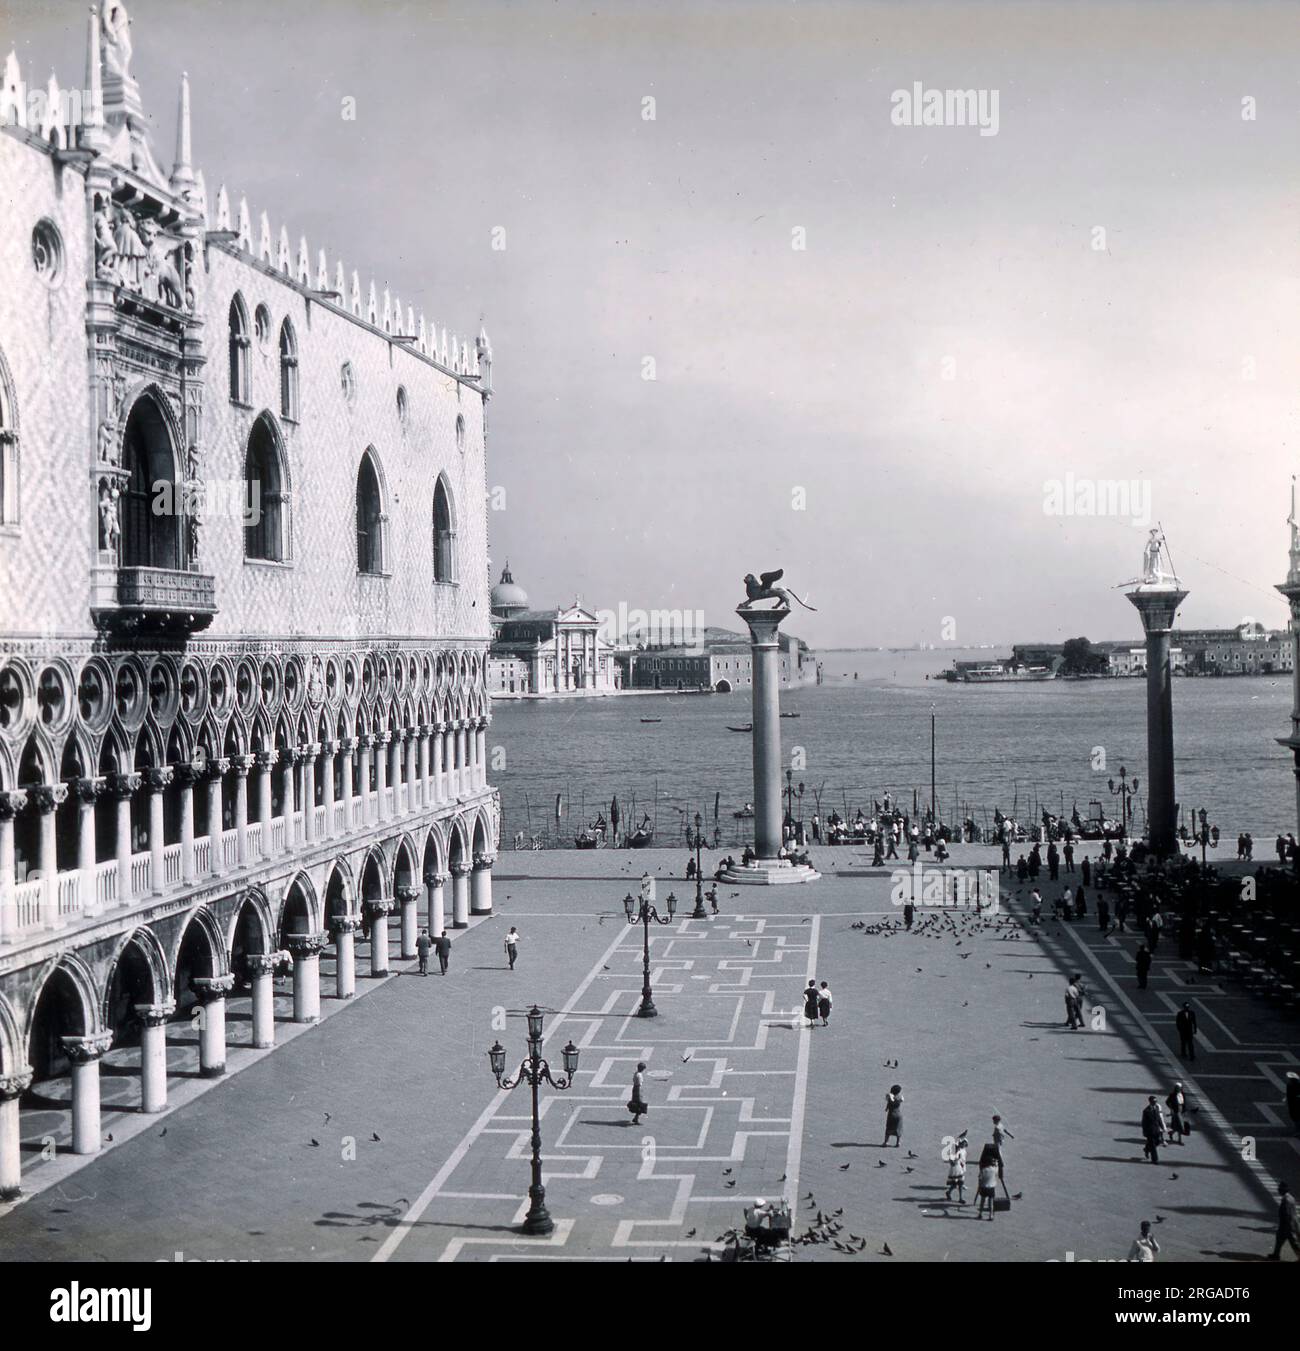 Le Grand Canal sur la Piazzetta San Marco, avec le Palais des Doges sur la gauche, Venise, Italie. Banque D'Images